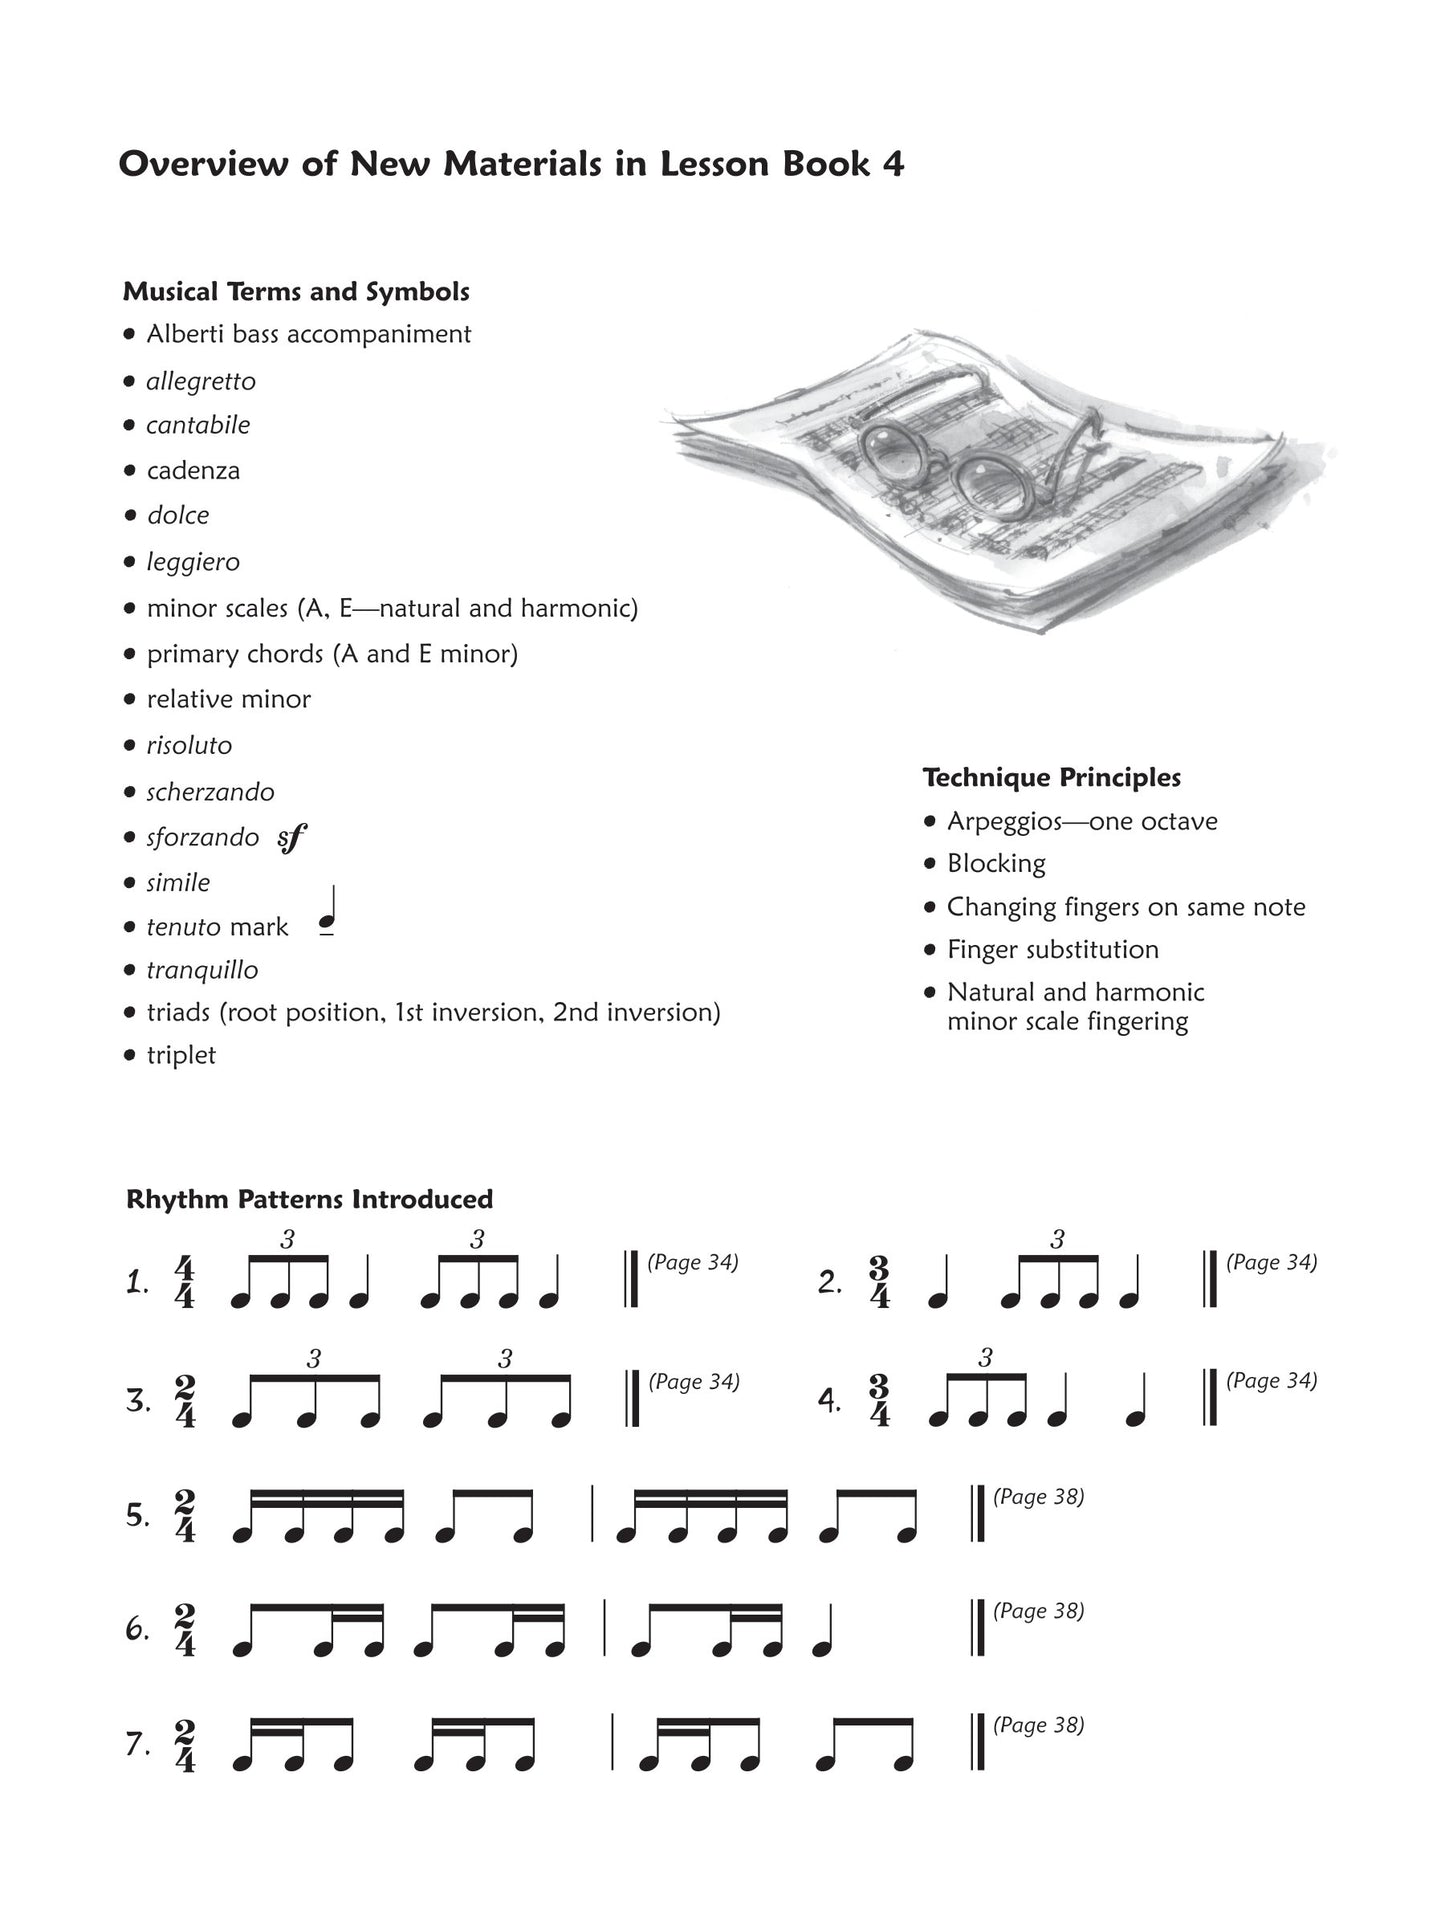 Alfred's Premier Piano Course - Lesson Level 4 Book